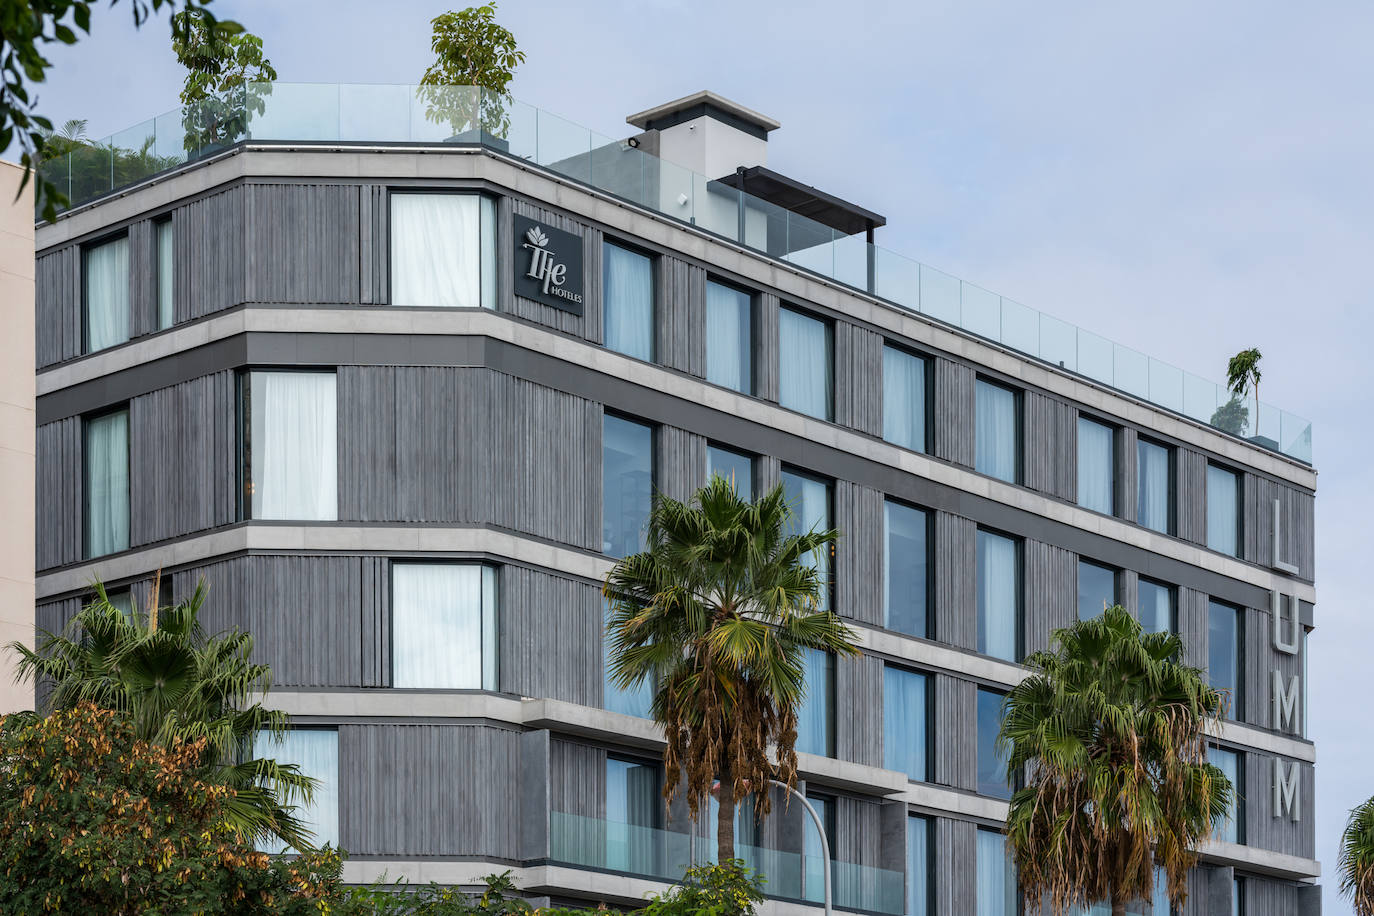 Hoteles THe inaugura su segundo hotel urbano en Las Palmas de Gran Canaria, el Hotel LUMM